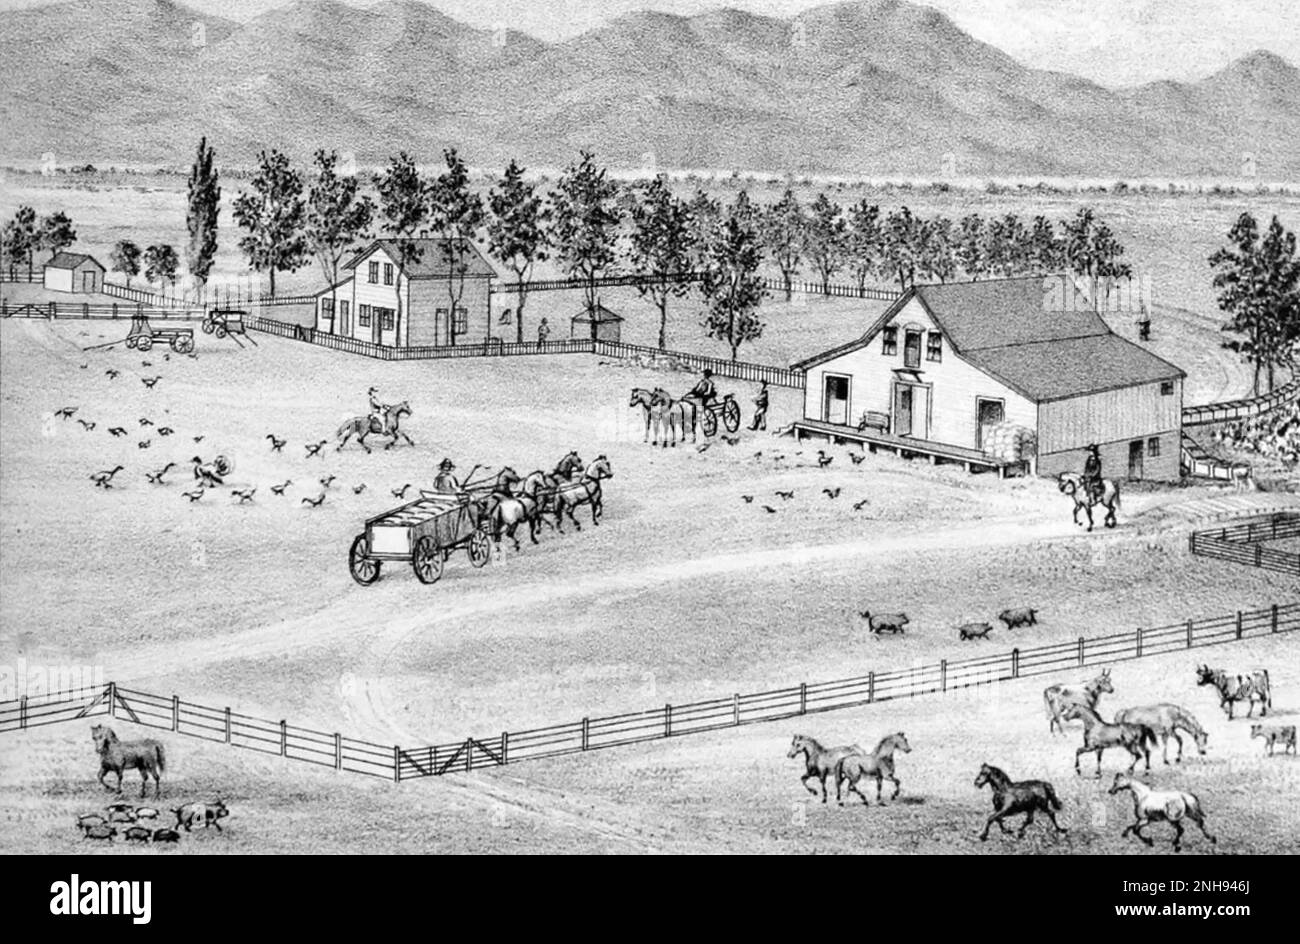 A settler ranch in the American West. Farm of W. R. Lee, Esmeralda County, Mason Valley, Nevada. Illustration by Myron Angel, 1881./n Stock Photo